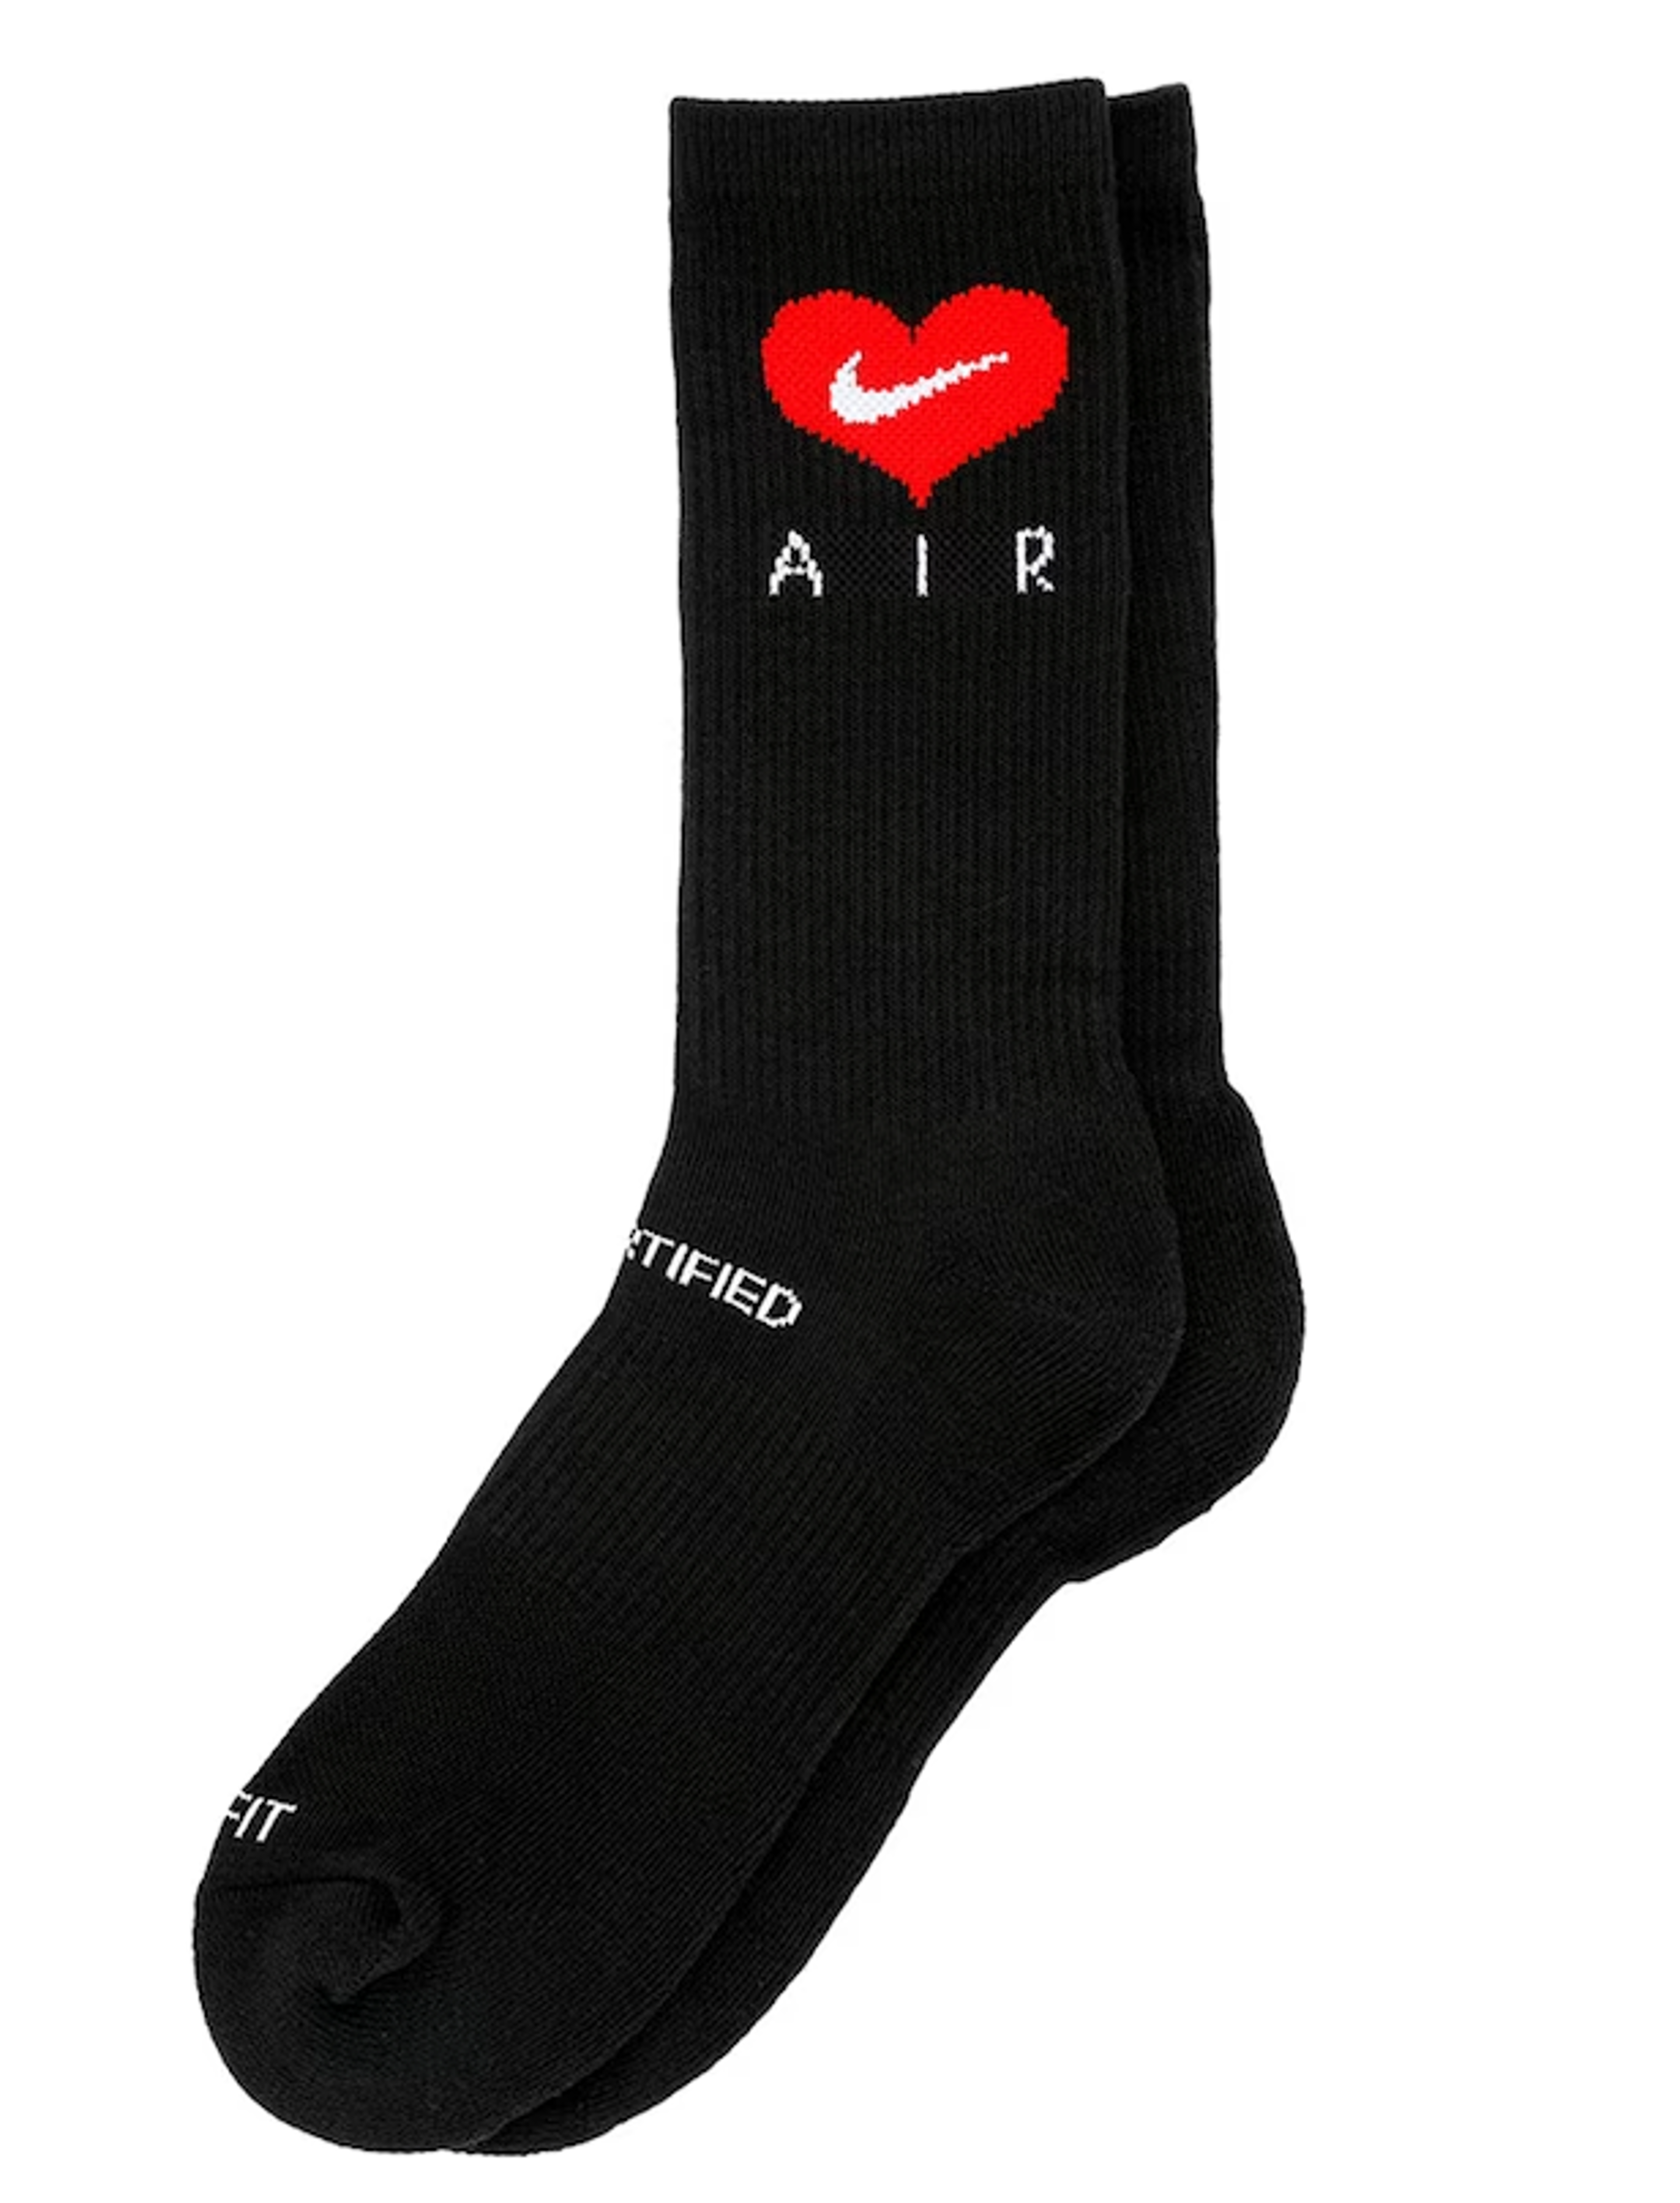 Nike x Drake Certified Lover Boy Socks Black